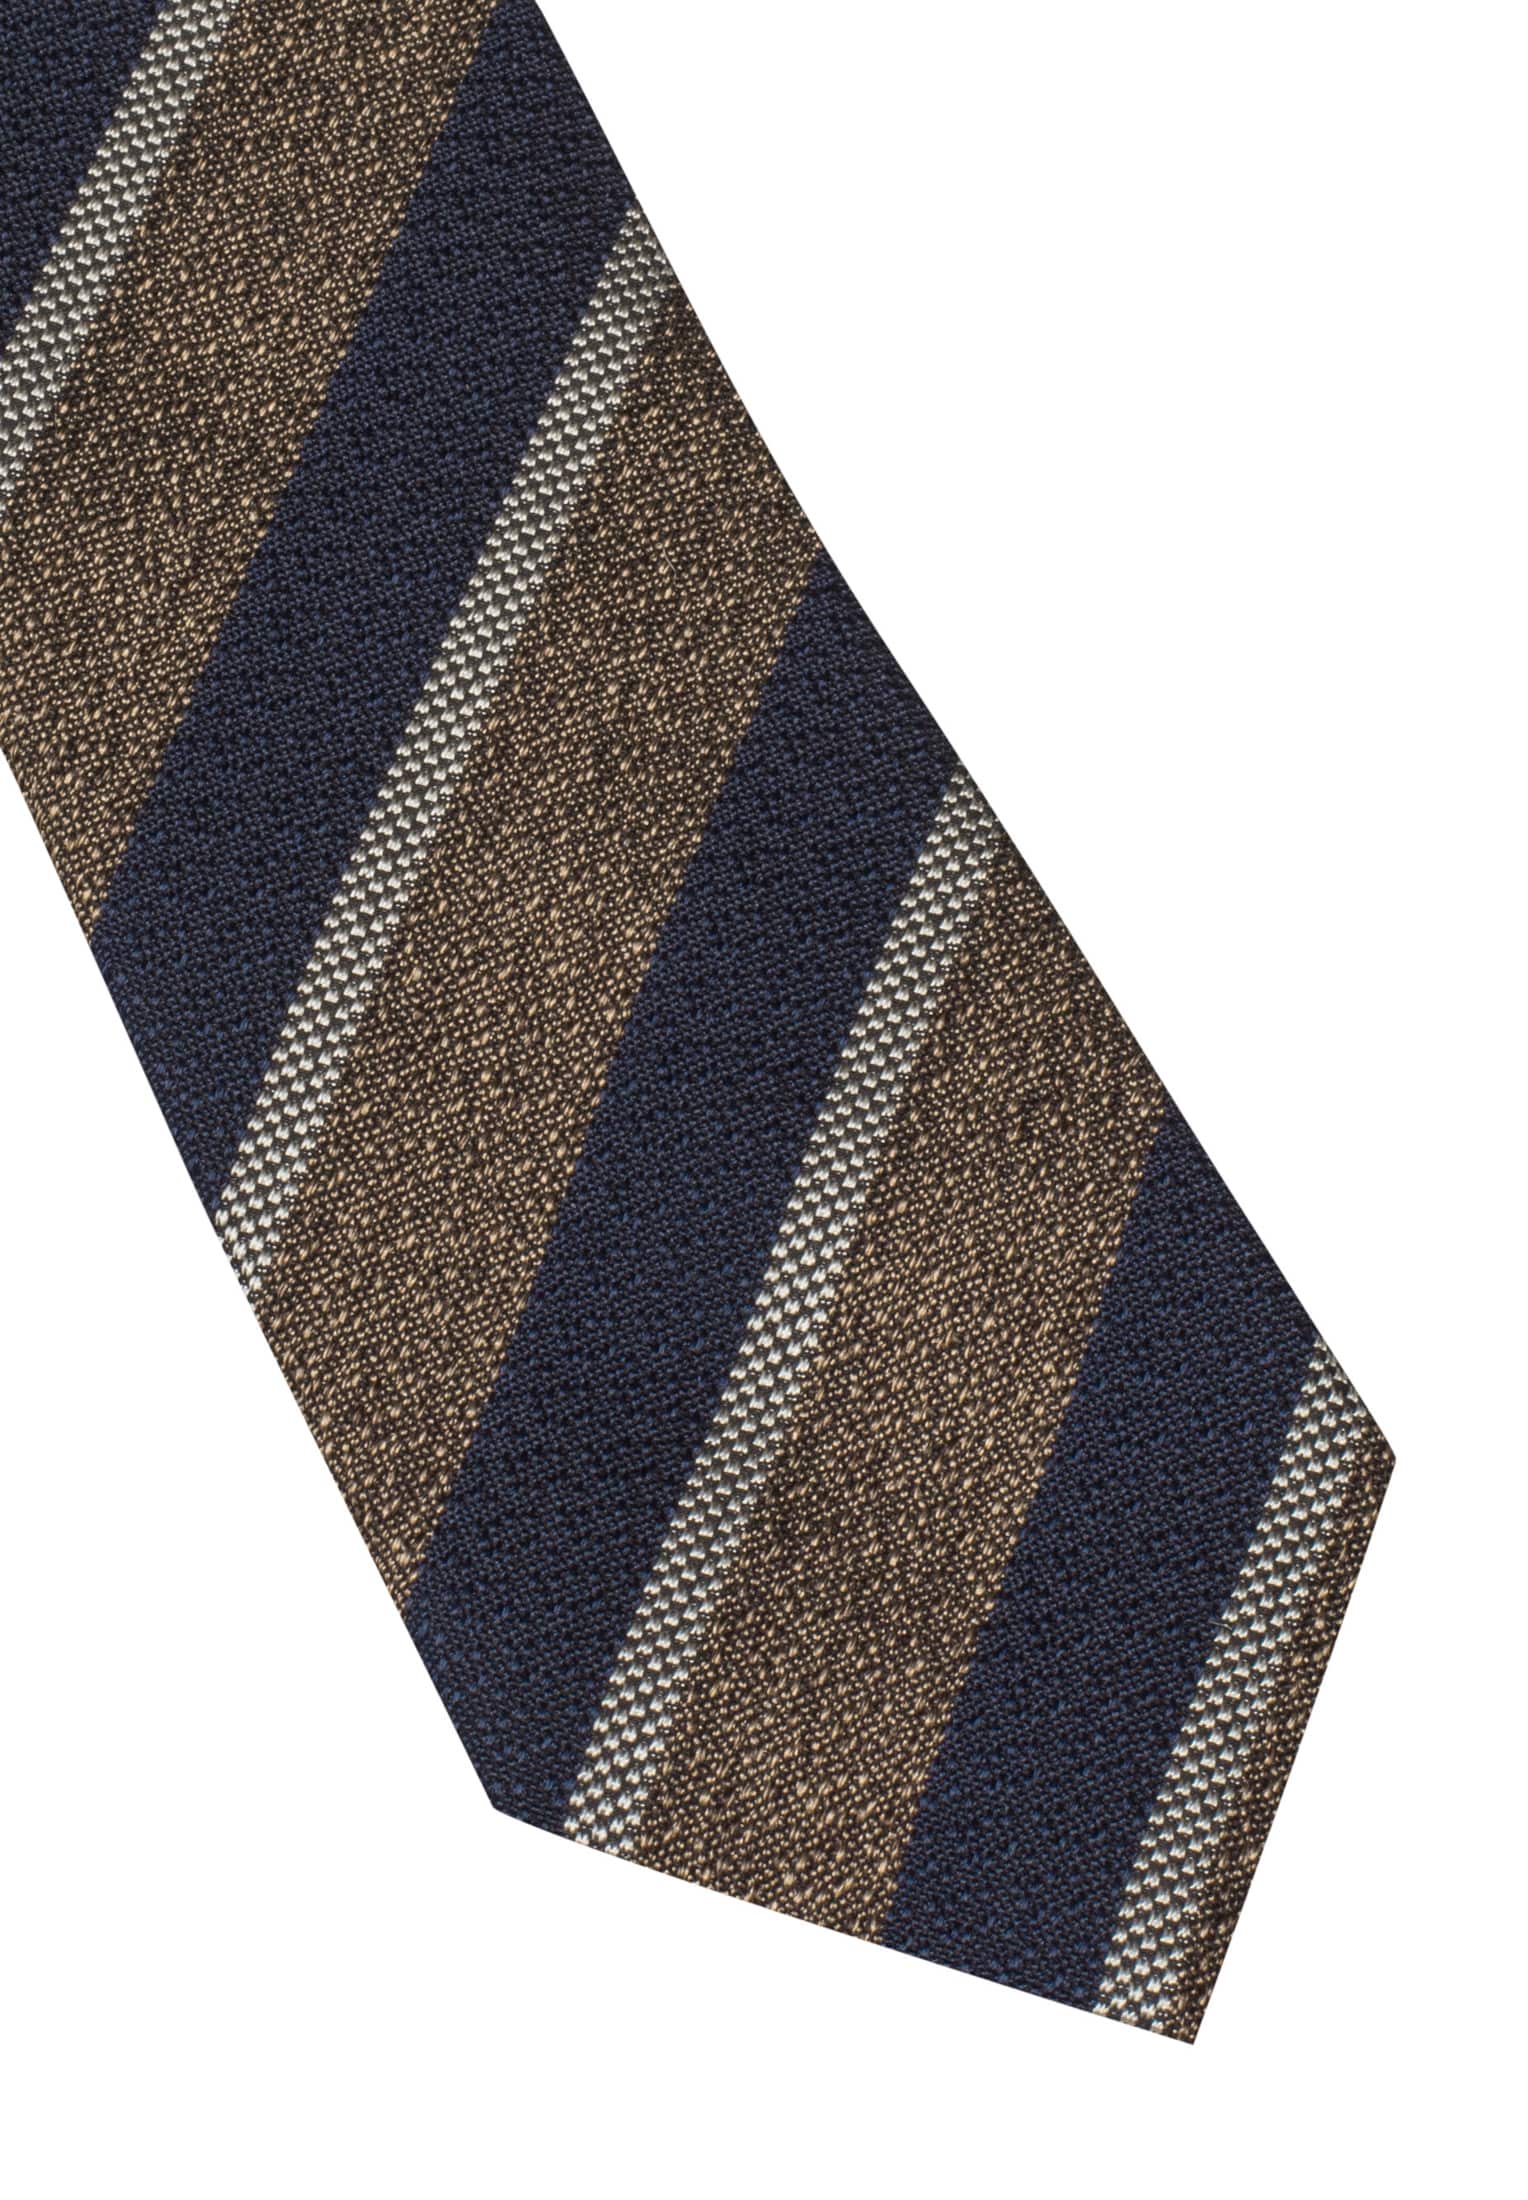 Cravate bleu foncé à carreaux